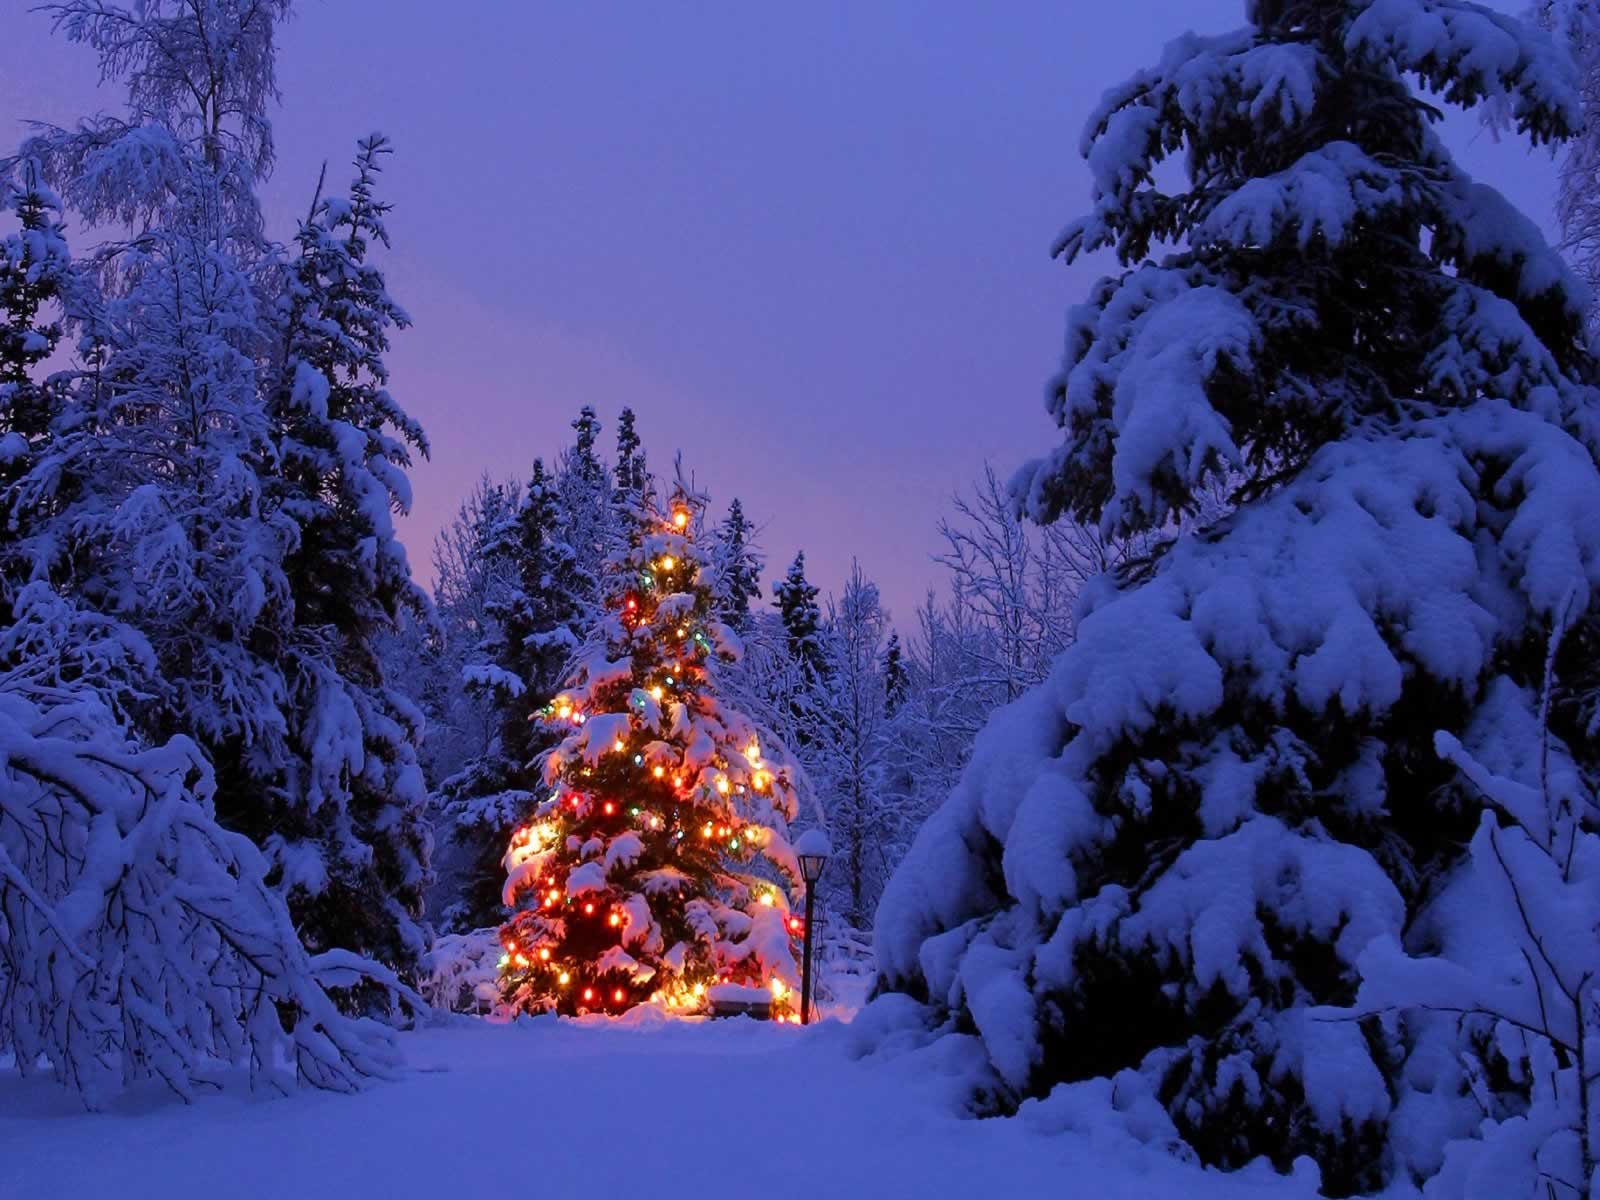 Joyful Season Christmas Landscapes Wallpaper Image